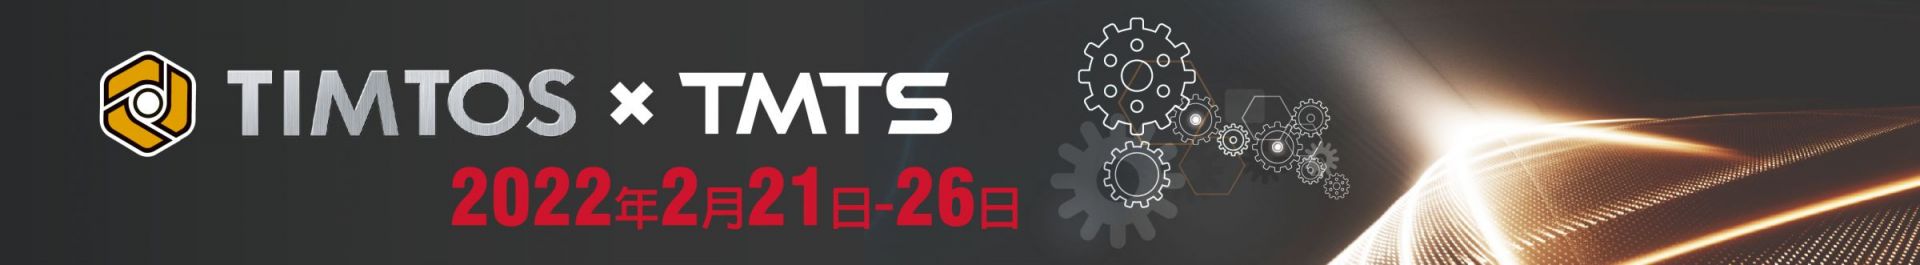 TIMTOS x TMTS 2022 Pameran Alat Mesin Antarabangsa Taipei